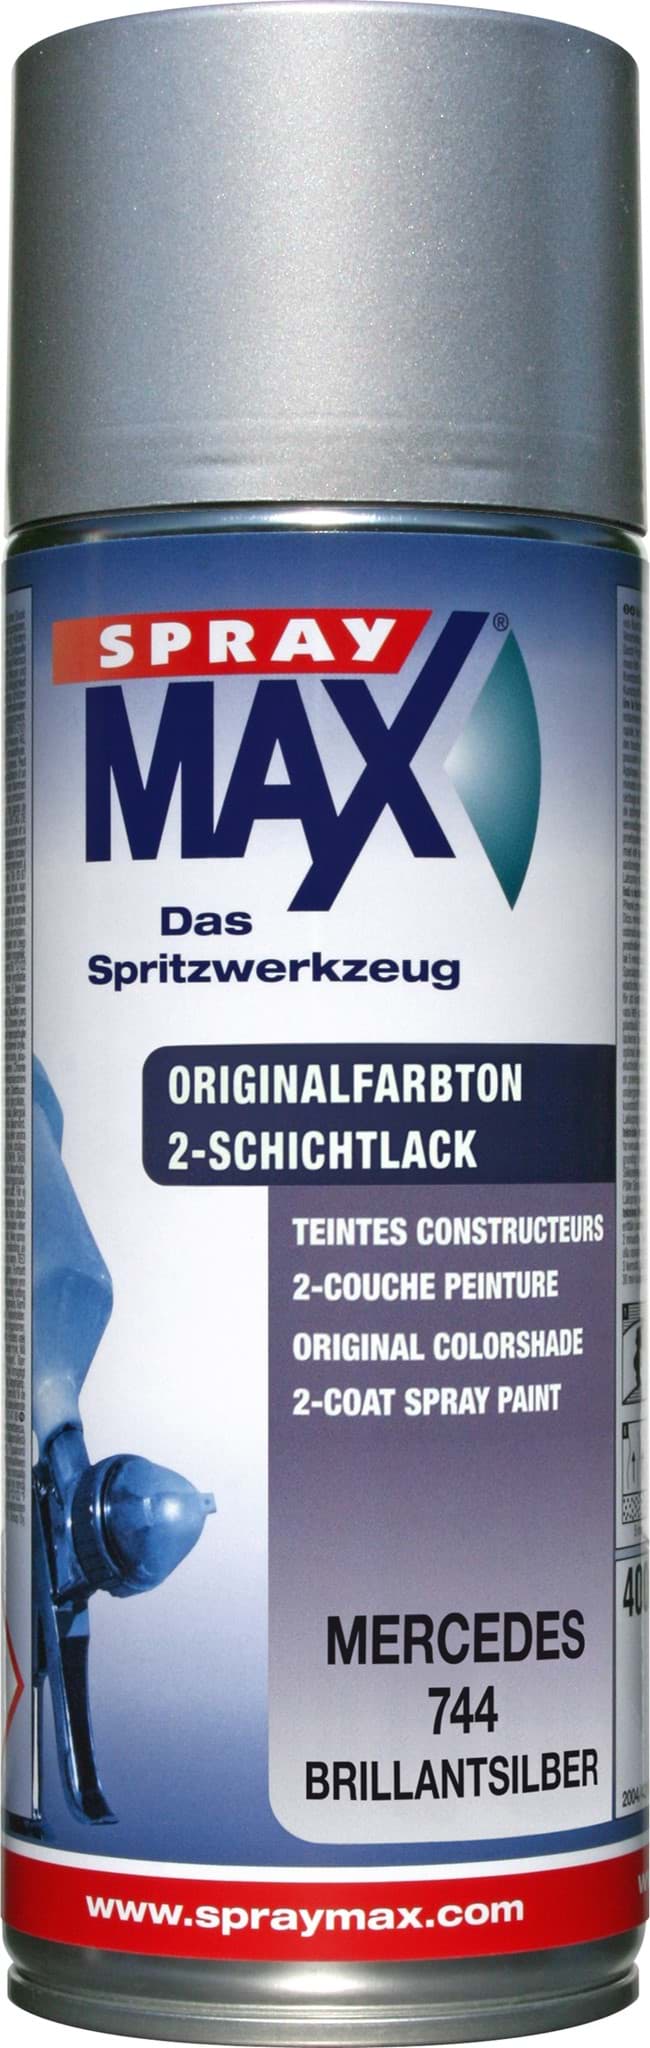 Picture of SprayMax Originalfarbton für Mercedes 744 brillantsilber